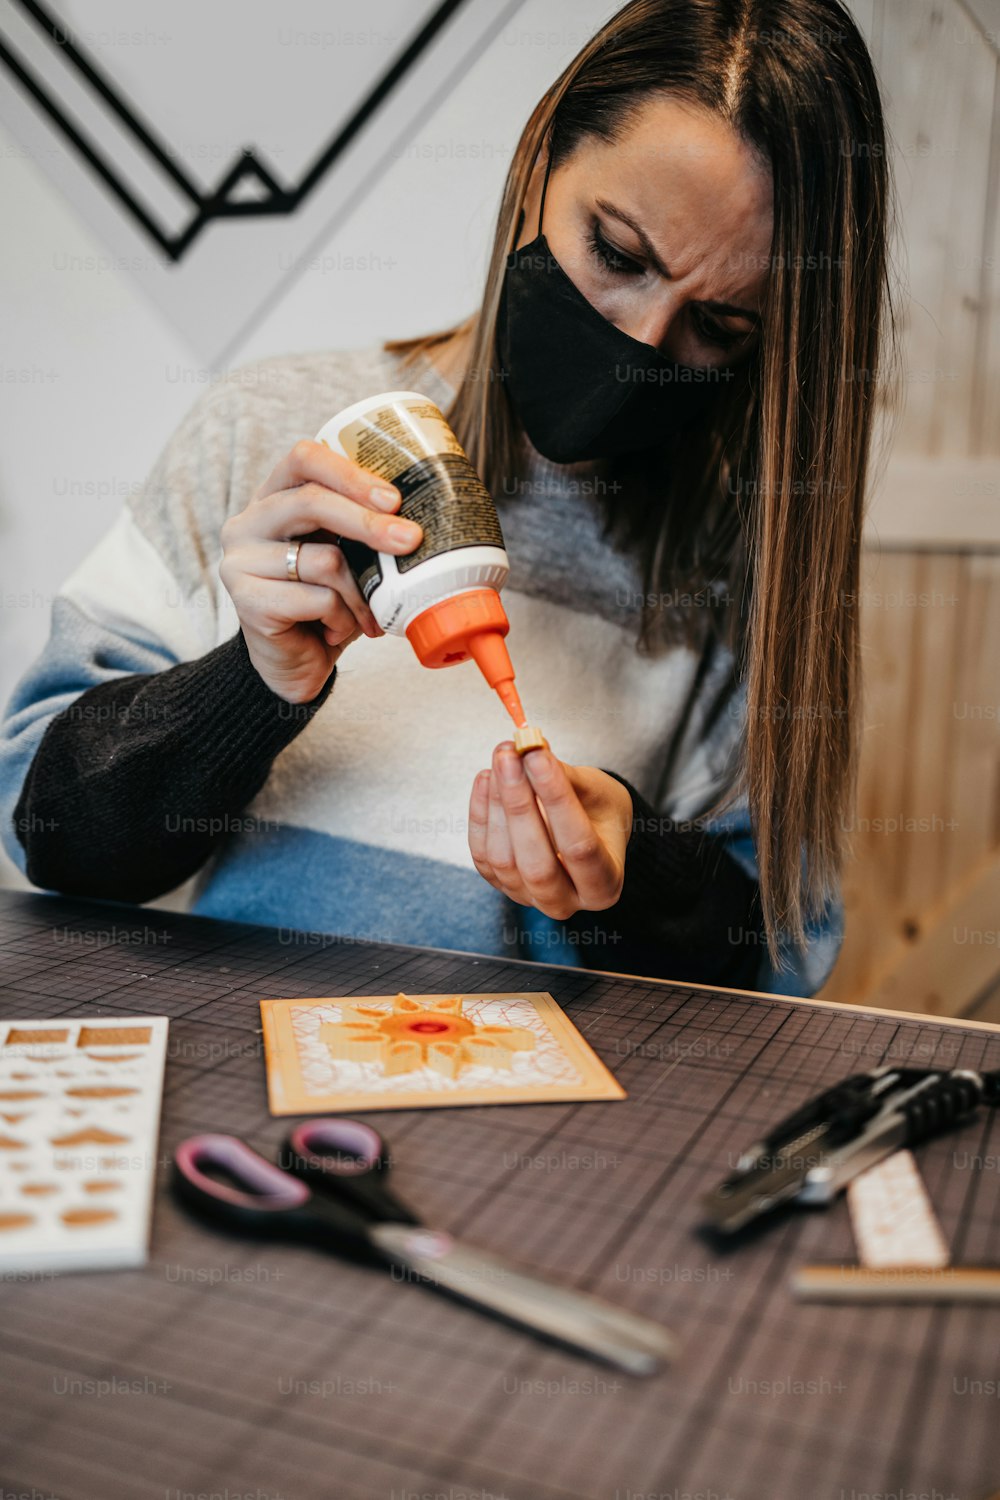 Papierkunstdesignerin und Künstlerin bei der Arbeit in ihrem Atelier oder ihrer Werkstatt. Sie trägt eine Schutzmaske gegen die Viruspandemie.